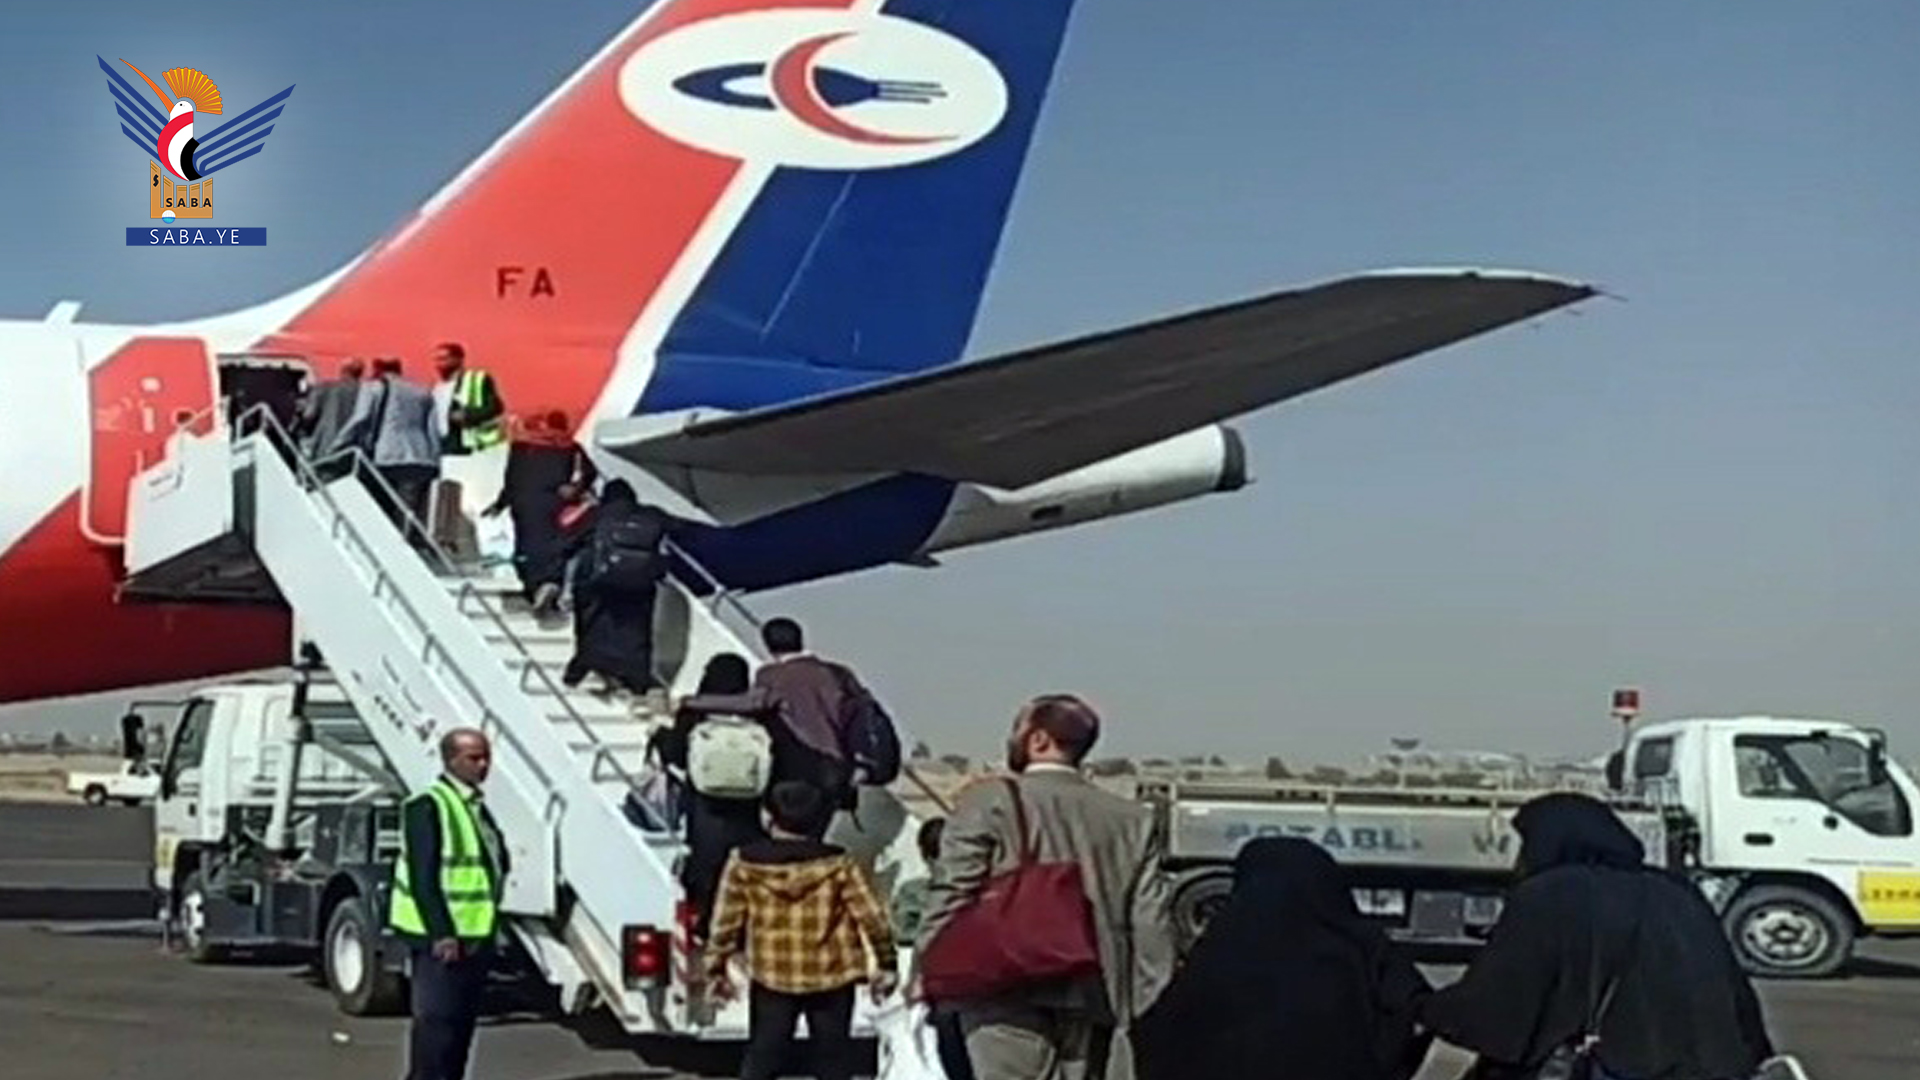 553 Passagiere kamen an und verließen den internationalen Flughafen Sana'a